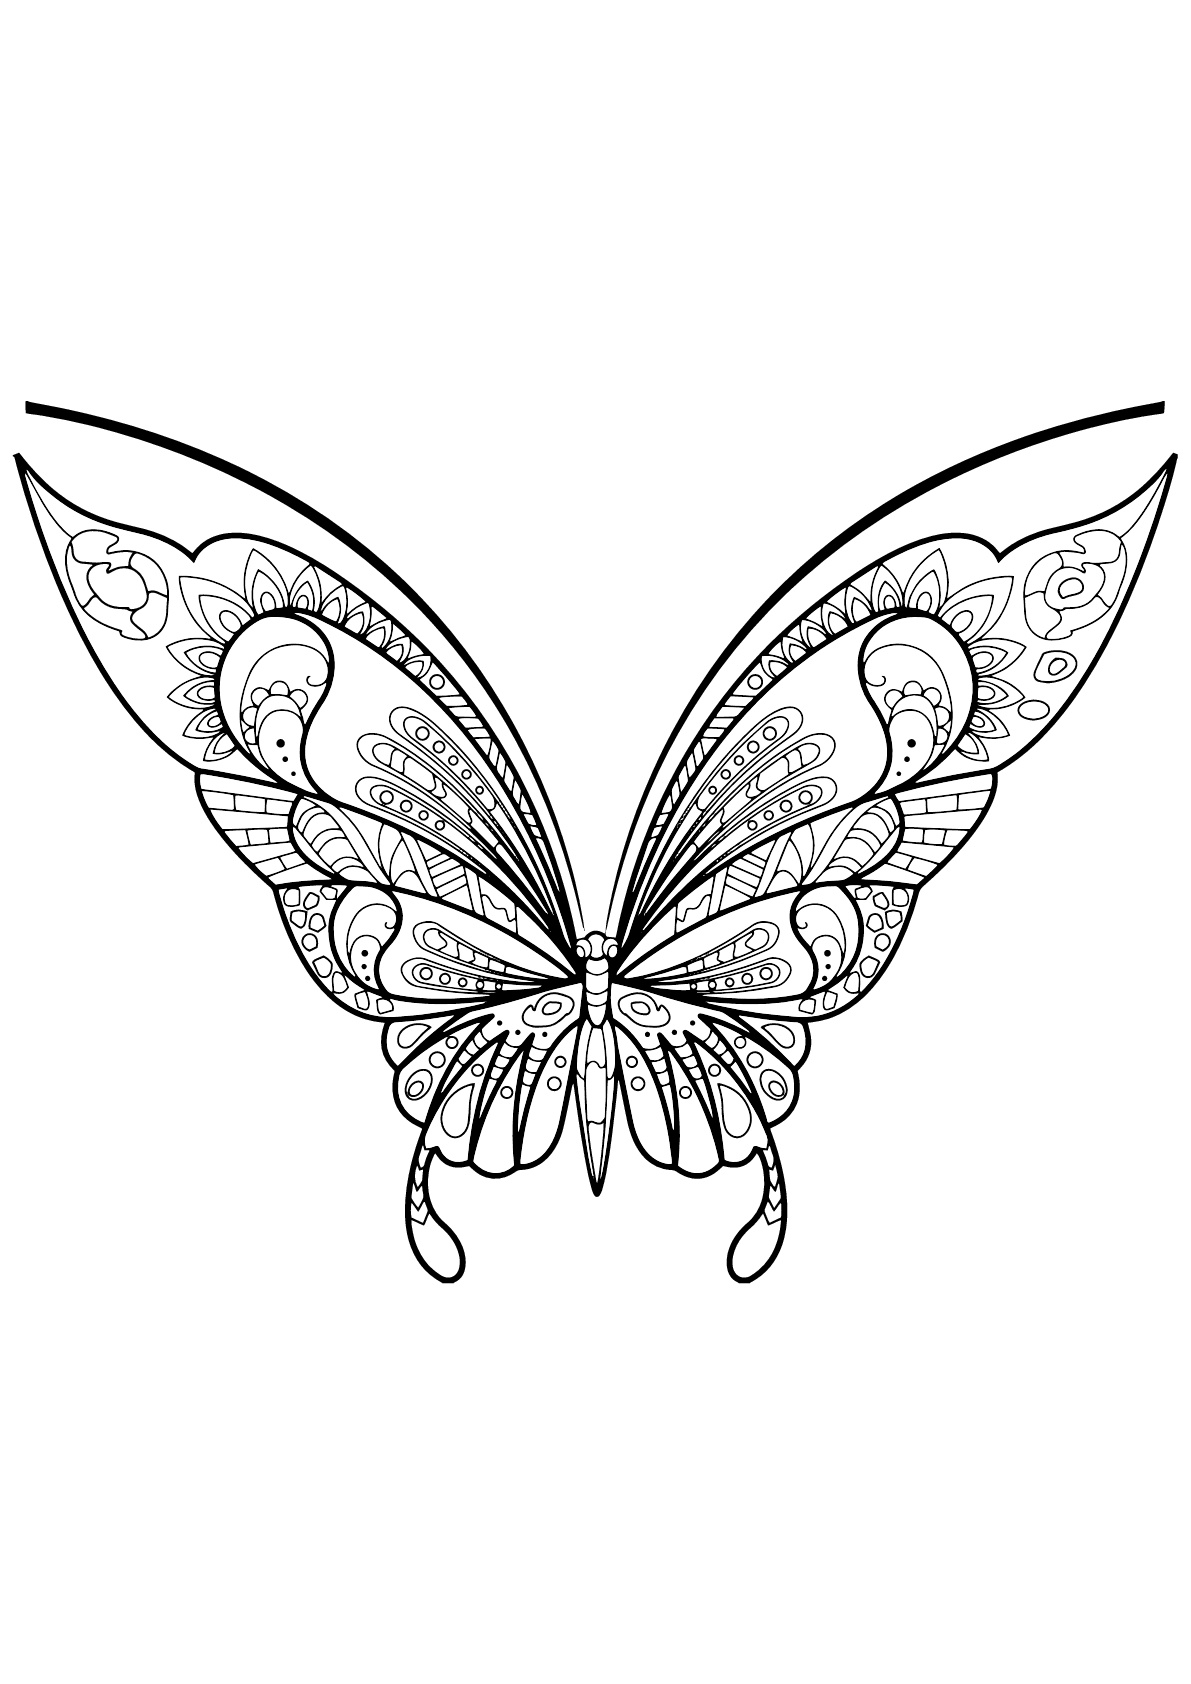 Mariposa con bellos e intrincados dibujos - 7